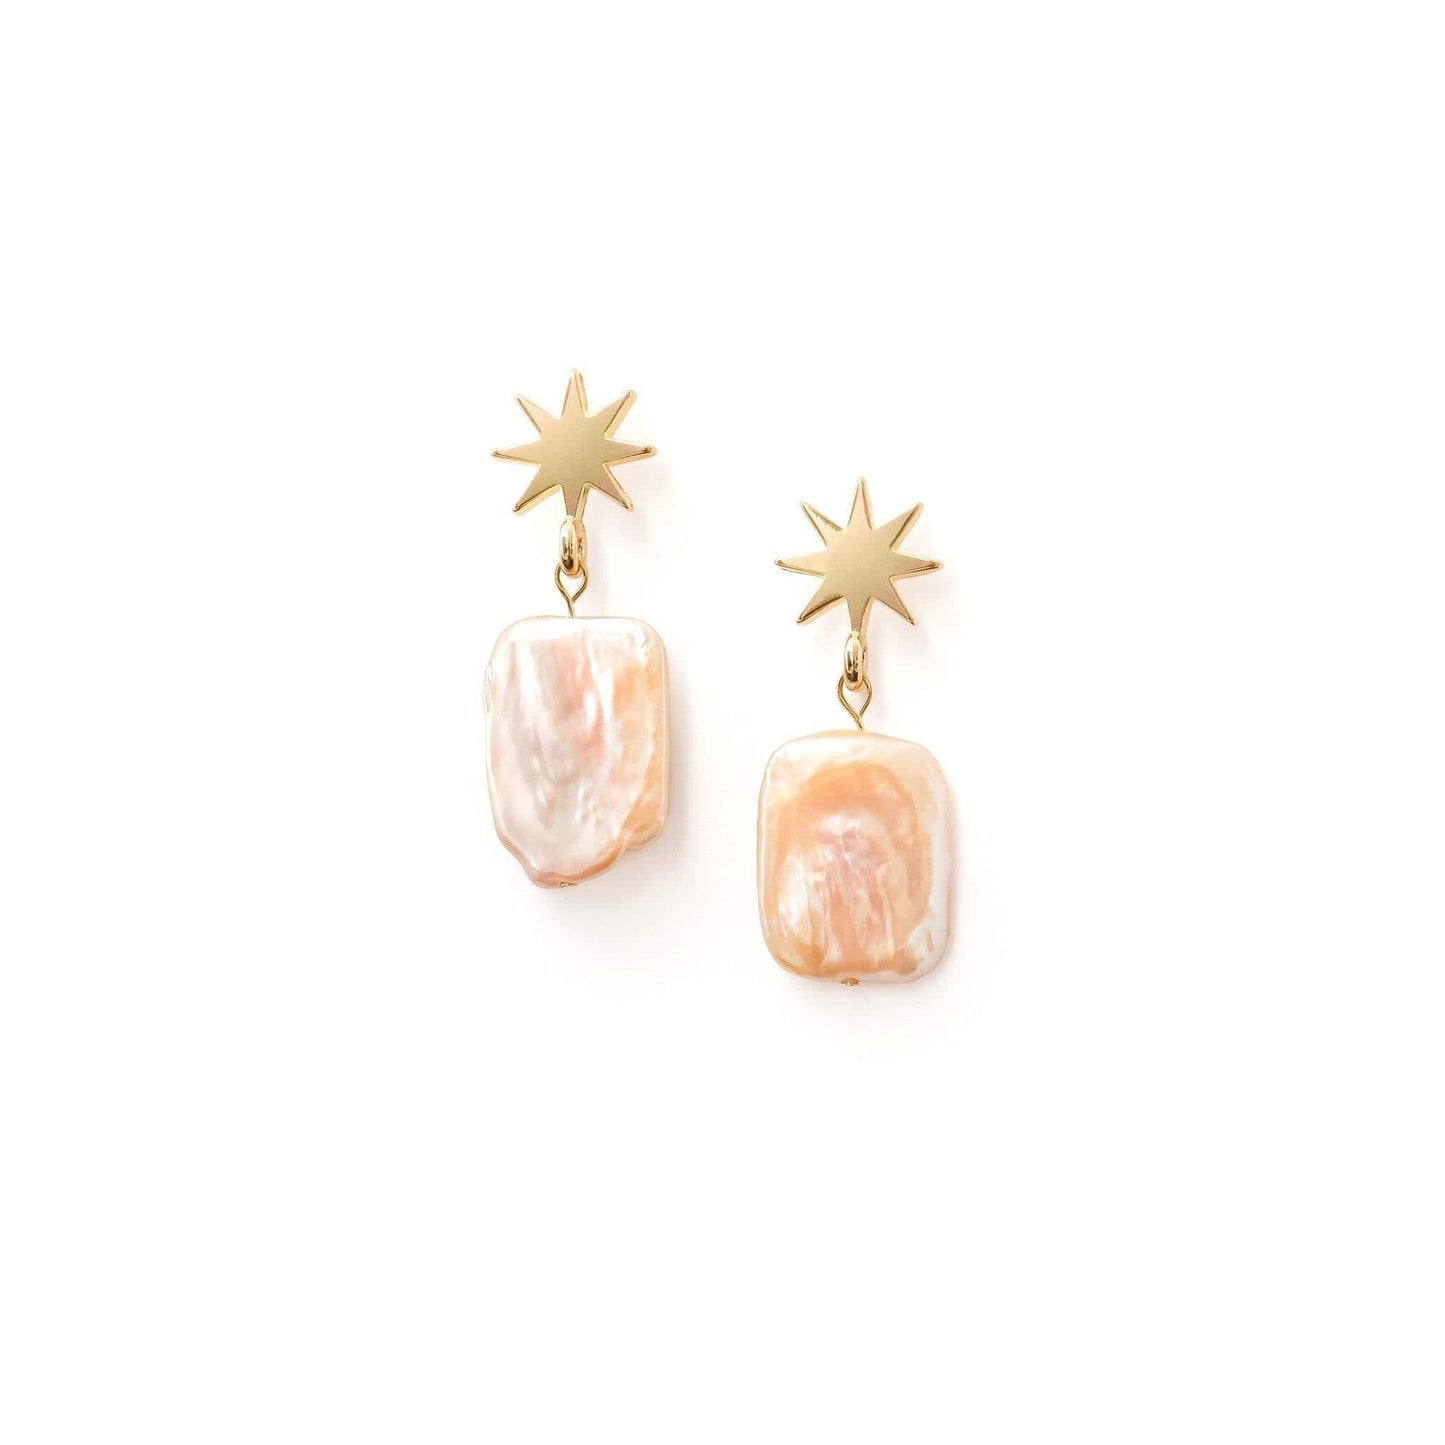 gold star + peachy pearl earrings - VUE by SEK